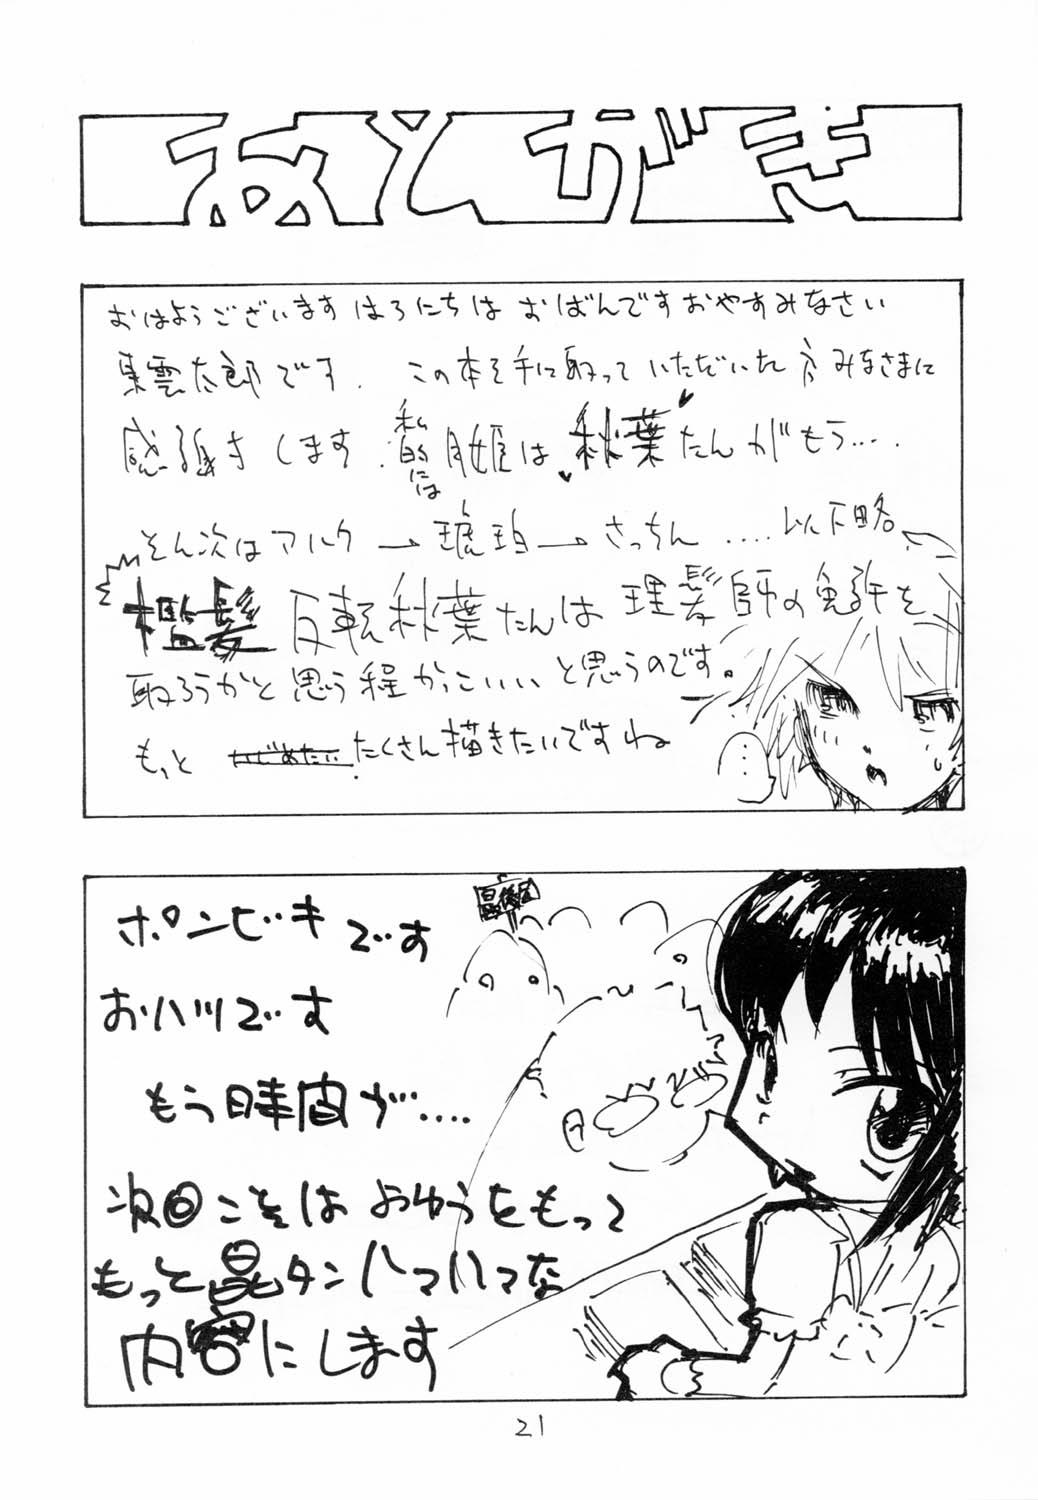 Topless (Asagamisai) [Kurohige (Shinonome Tarou, Ponbiki) Sange (Tsukihime) - Tsukihime Close Up - Page 20